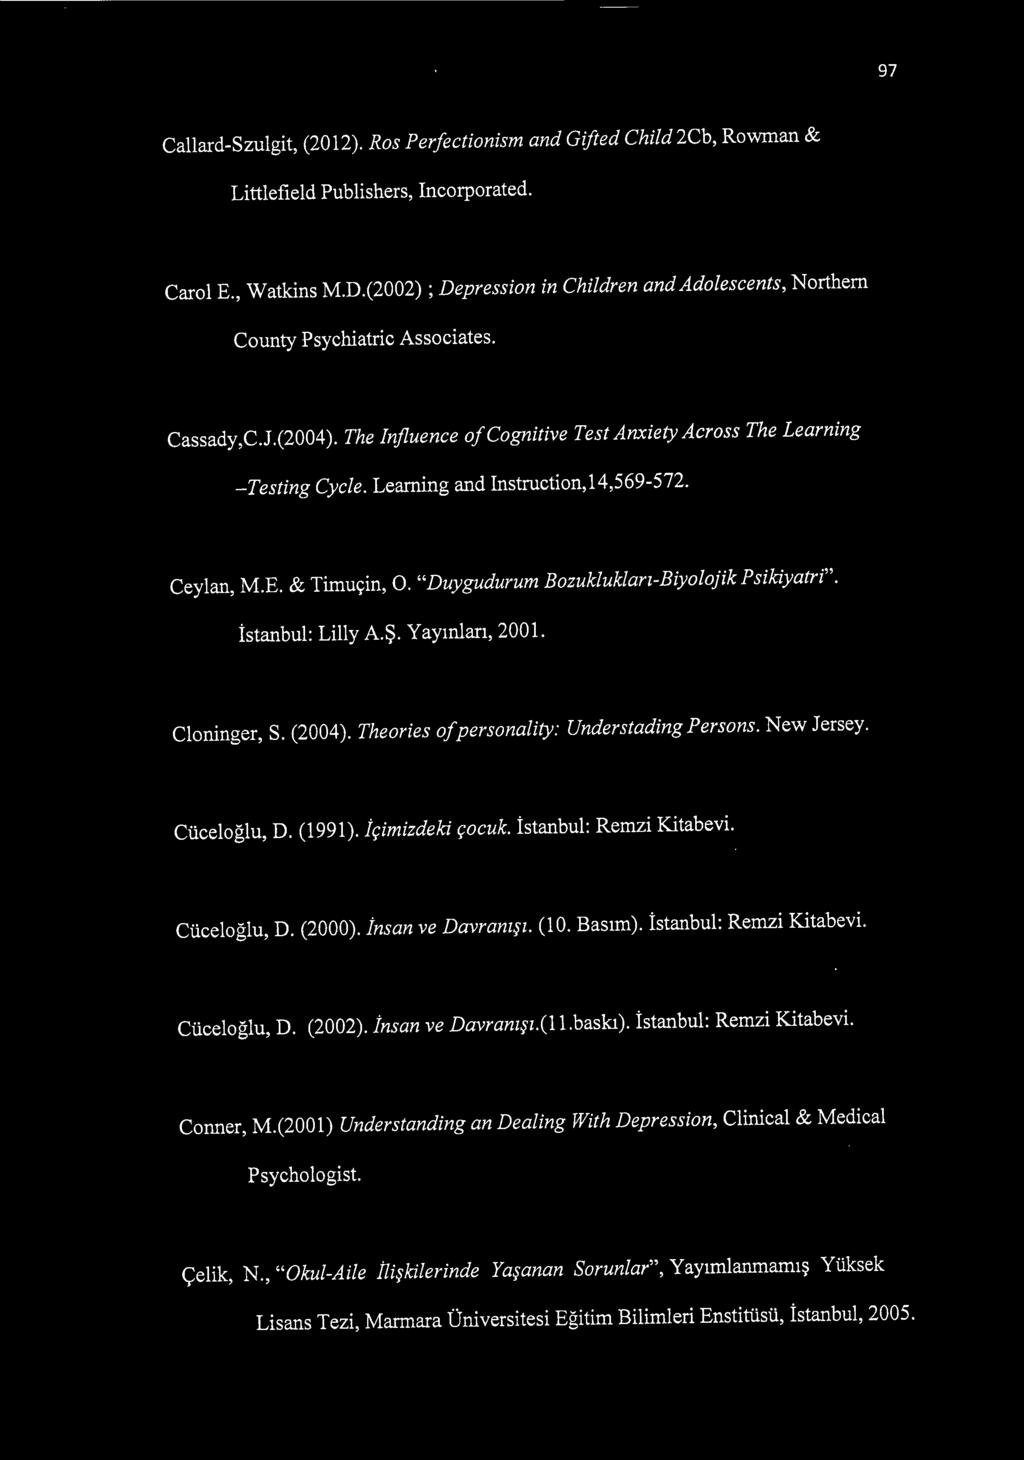 Learning and Instruction,14,569-572. Ceylan, M.E. & Timuçin, O. "Duygudurum Bozuklukları-Biyolojik Psikiyatri". İstanbul: Lilly A.Ş. Yayınları, 2001. Cloninger, S. (2004).